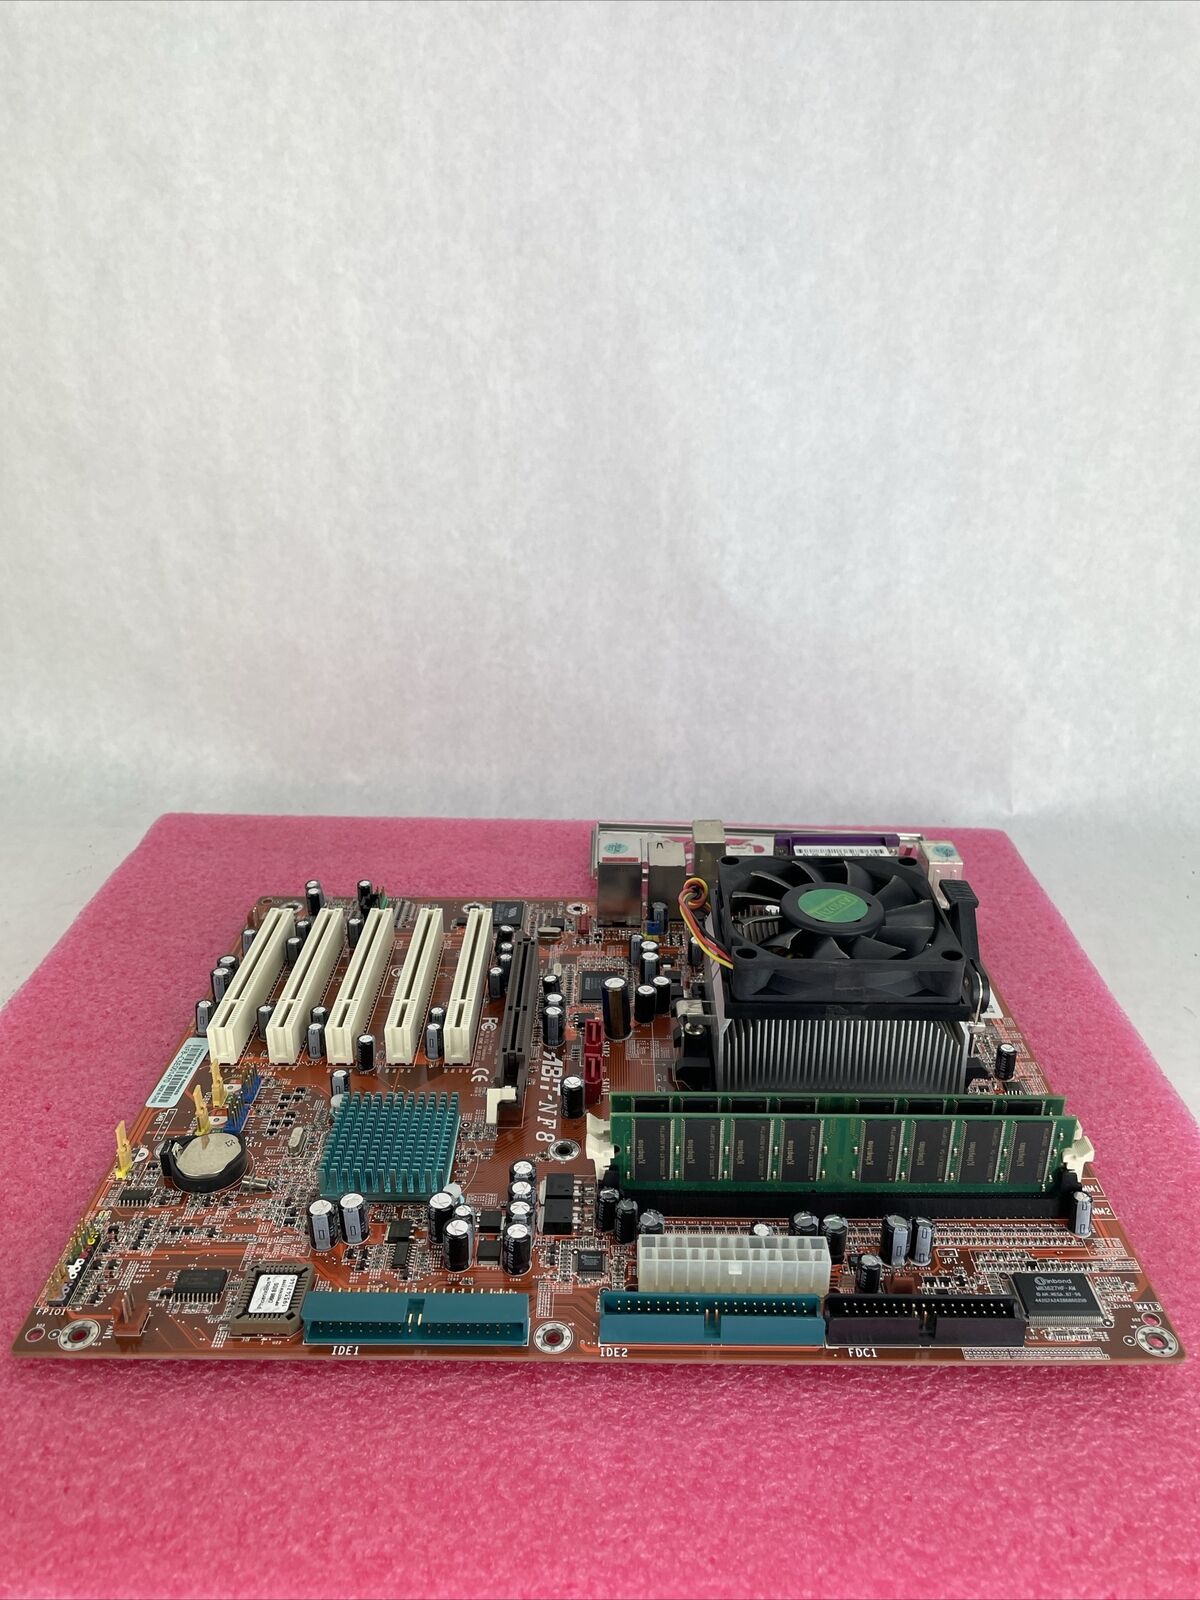 ABIT NF8 Motherboard AMD Athlon 64 2800+ 1.8GHz 1GB RAM w/Shield